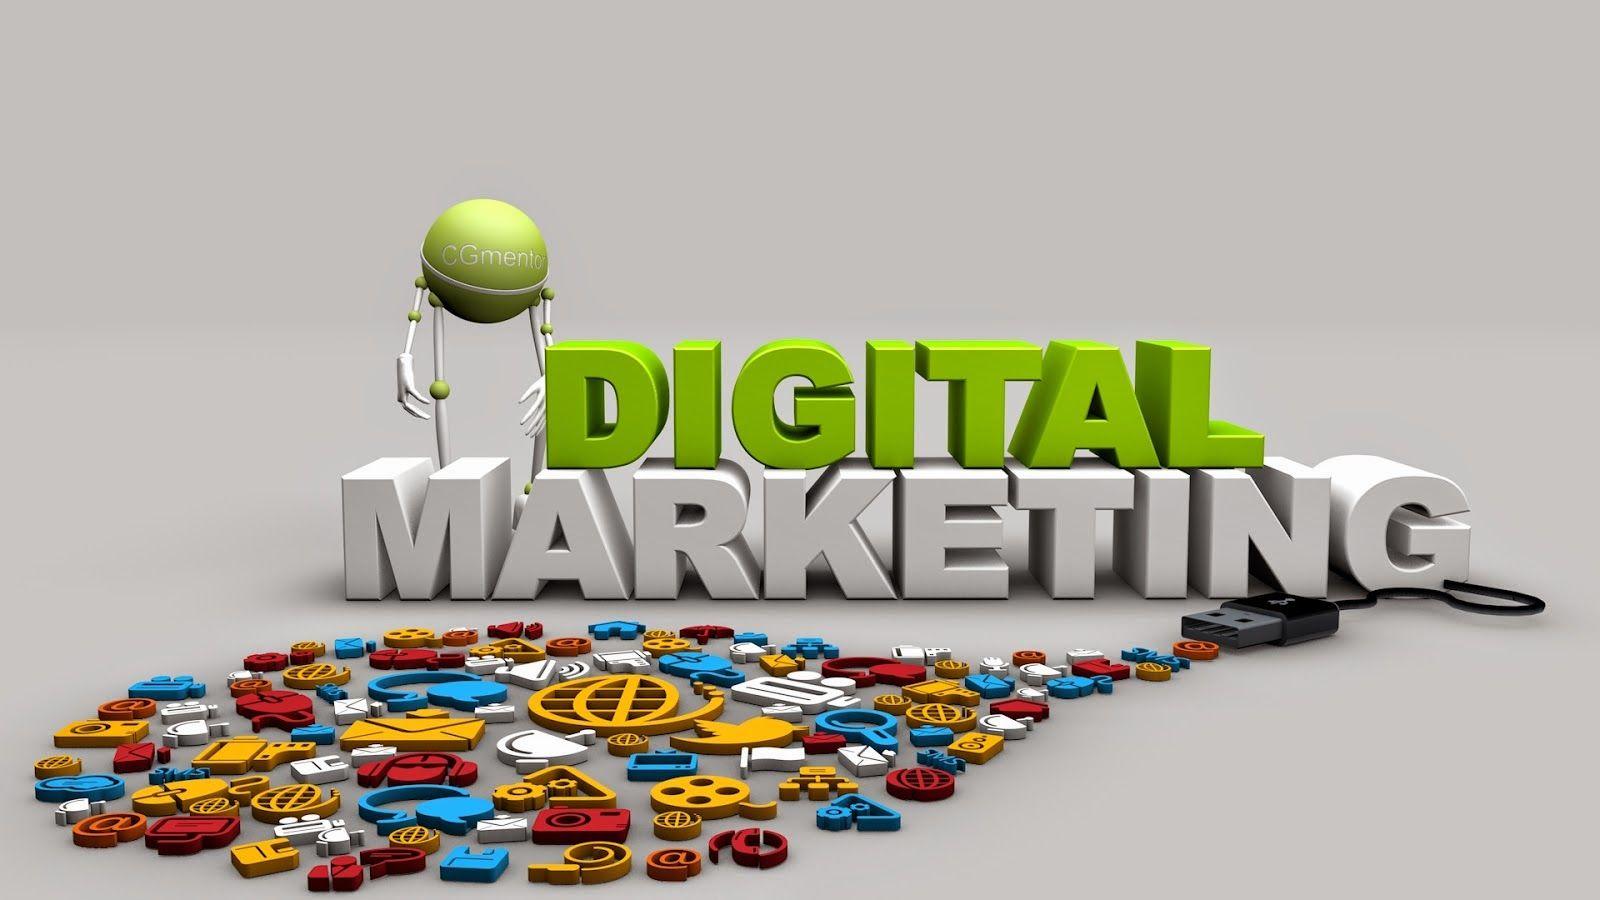 800+ Free Digital Marketing & Marketing Images - Pixabay